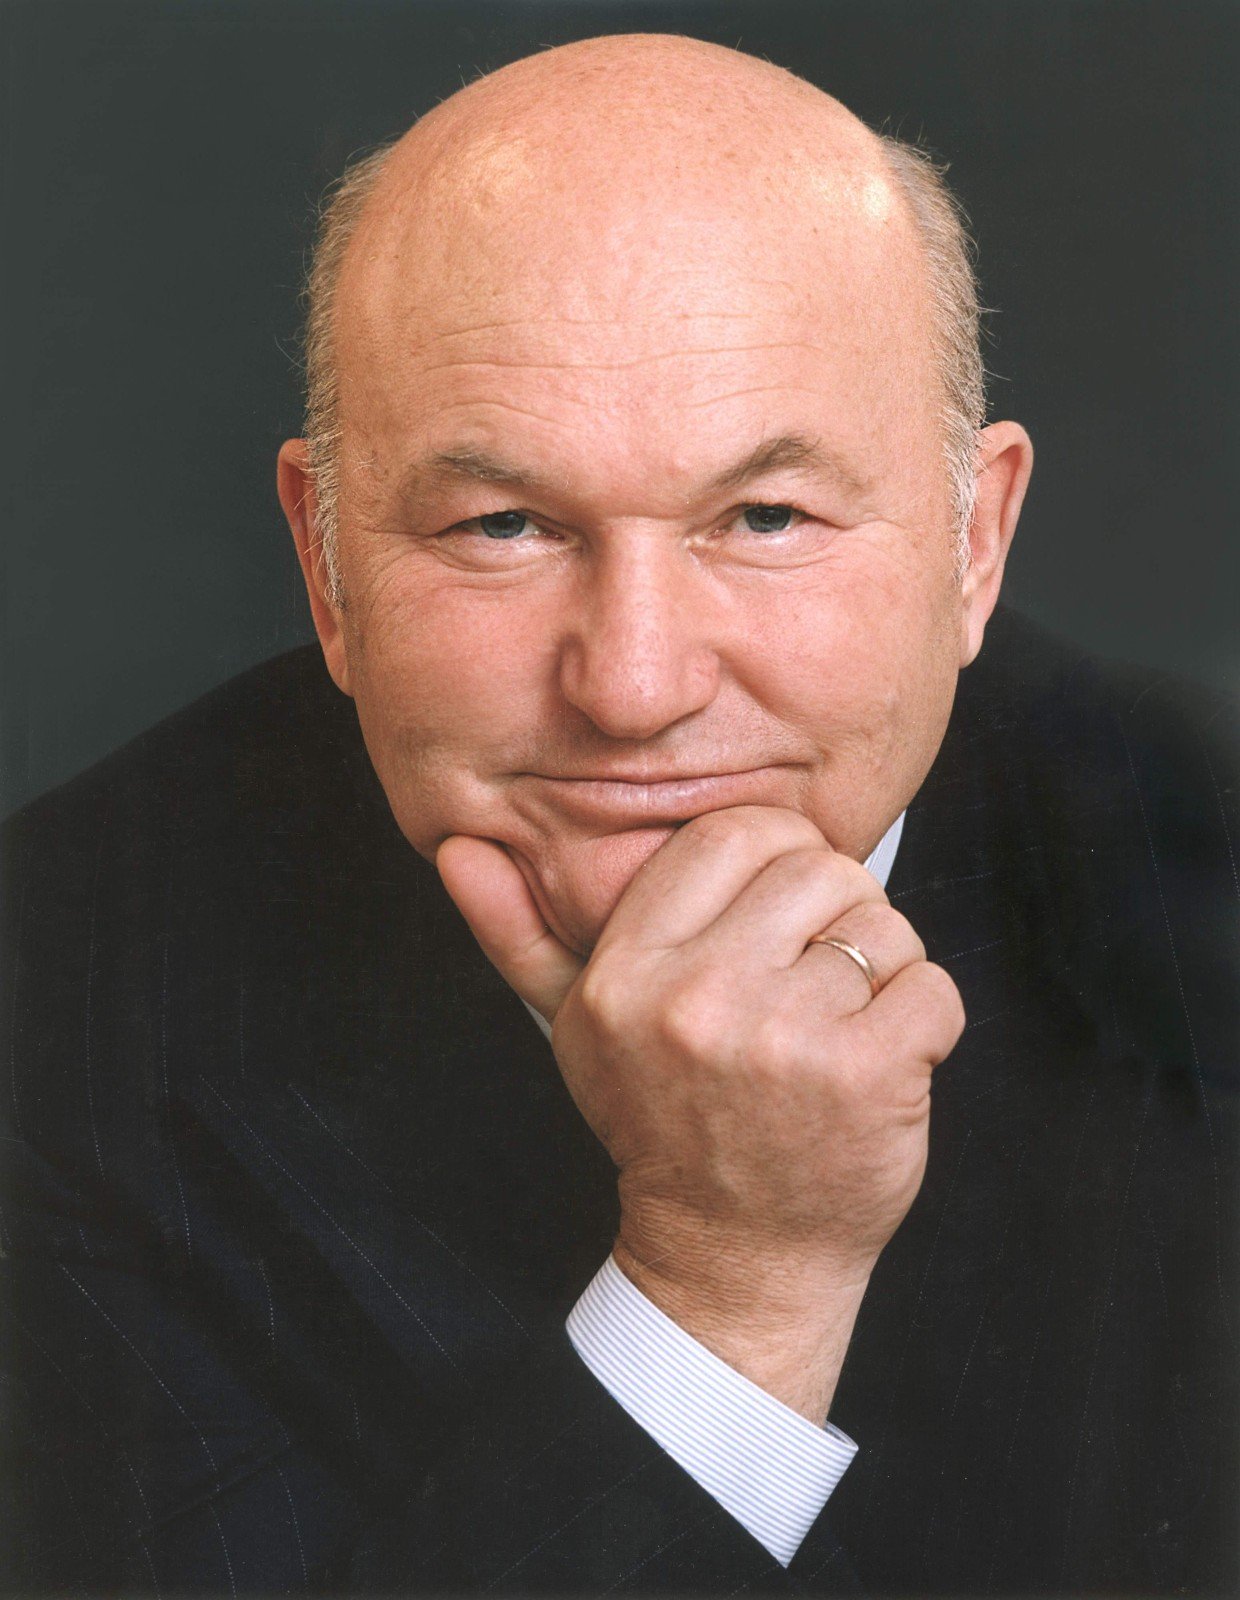 Бывший мэр Москвы Юрий Лужков умер в Мюнхене